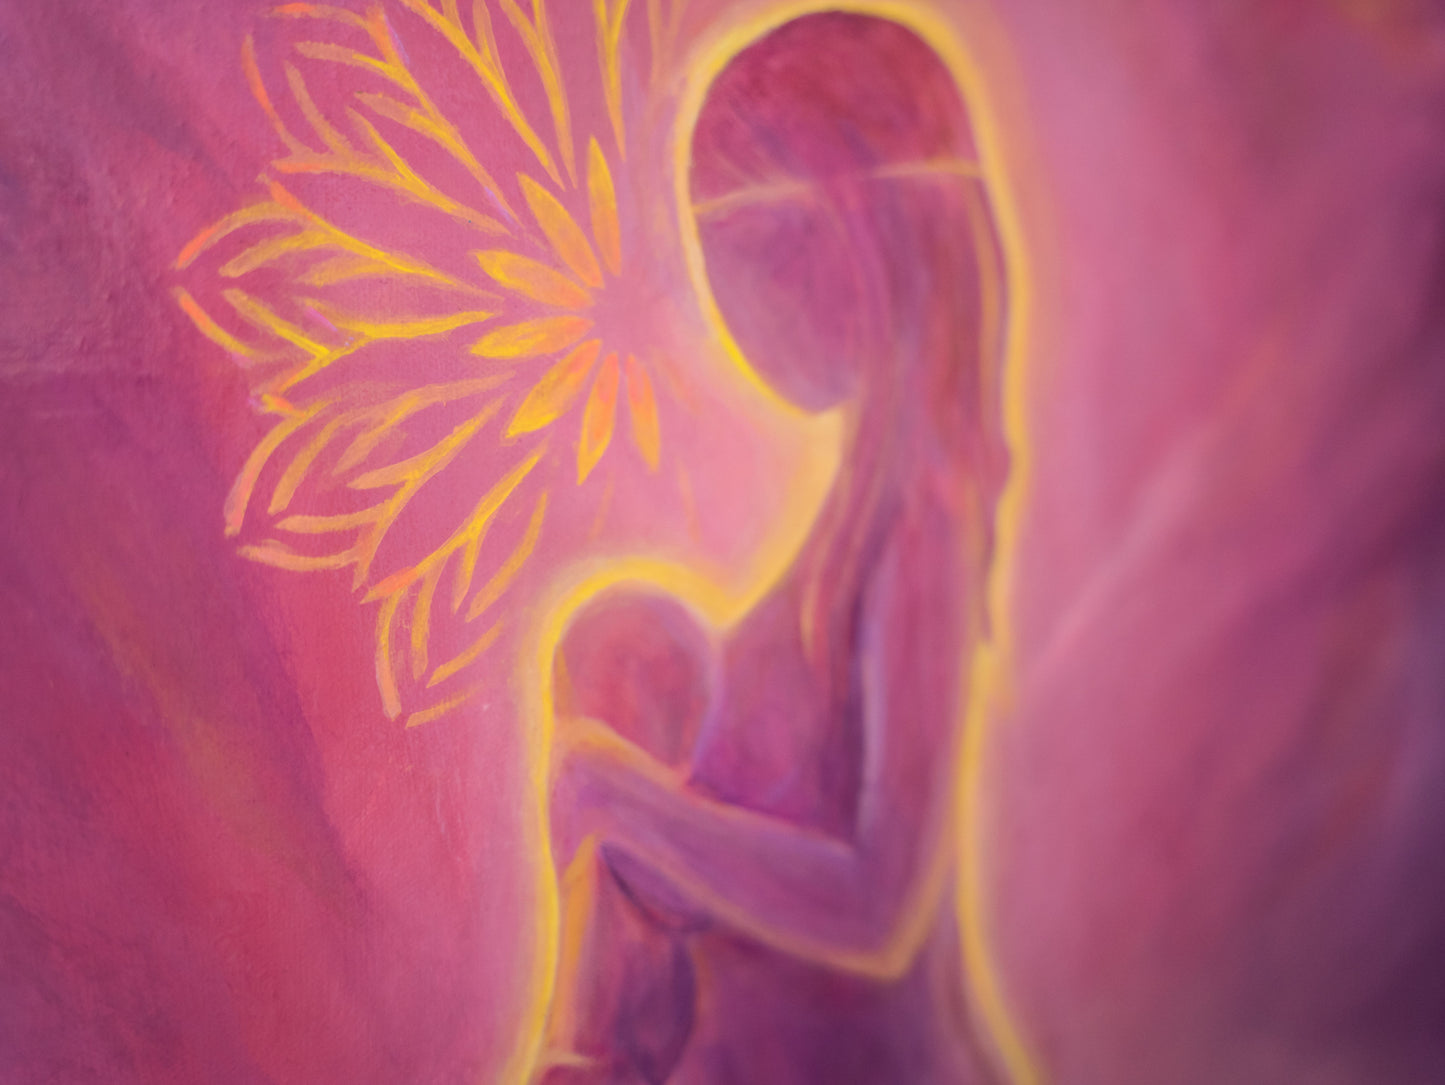 Divinement connectés - Art original de la maternité spirituelle - Peinture Luminescente